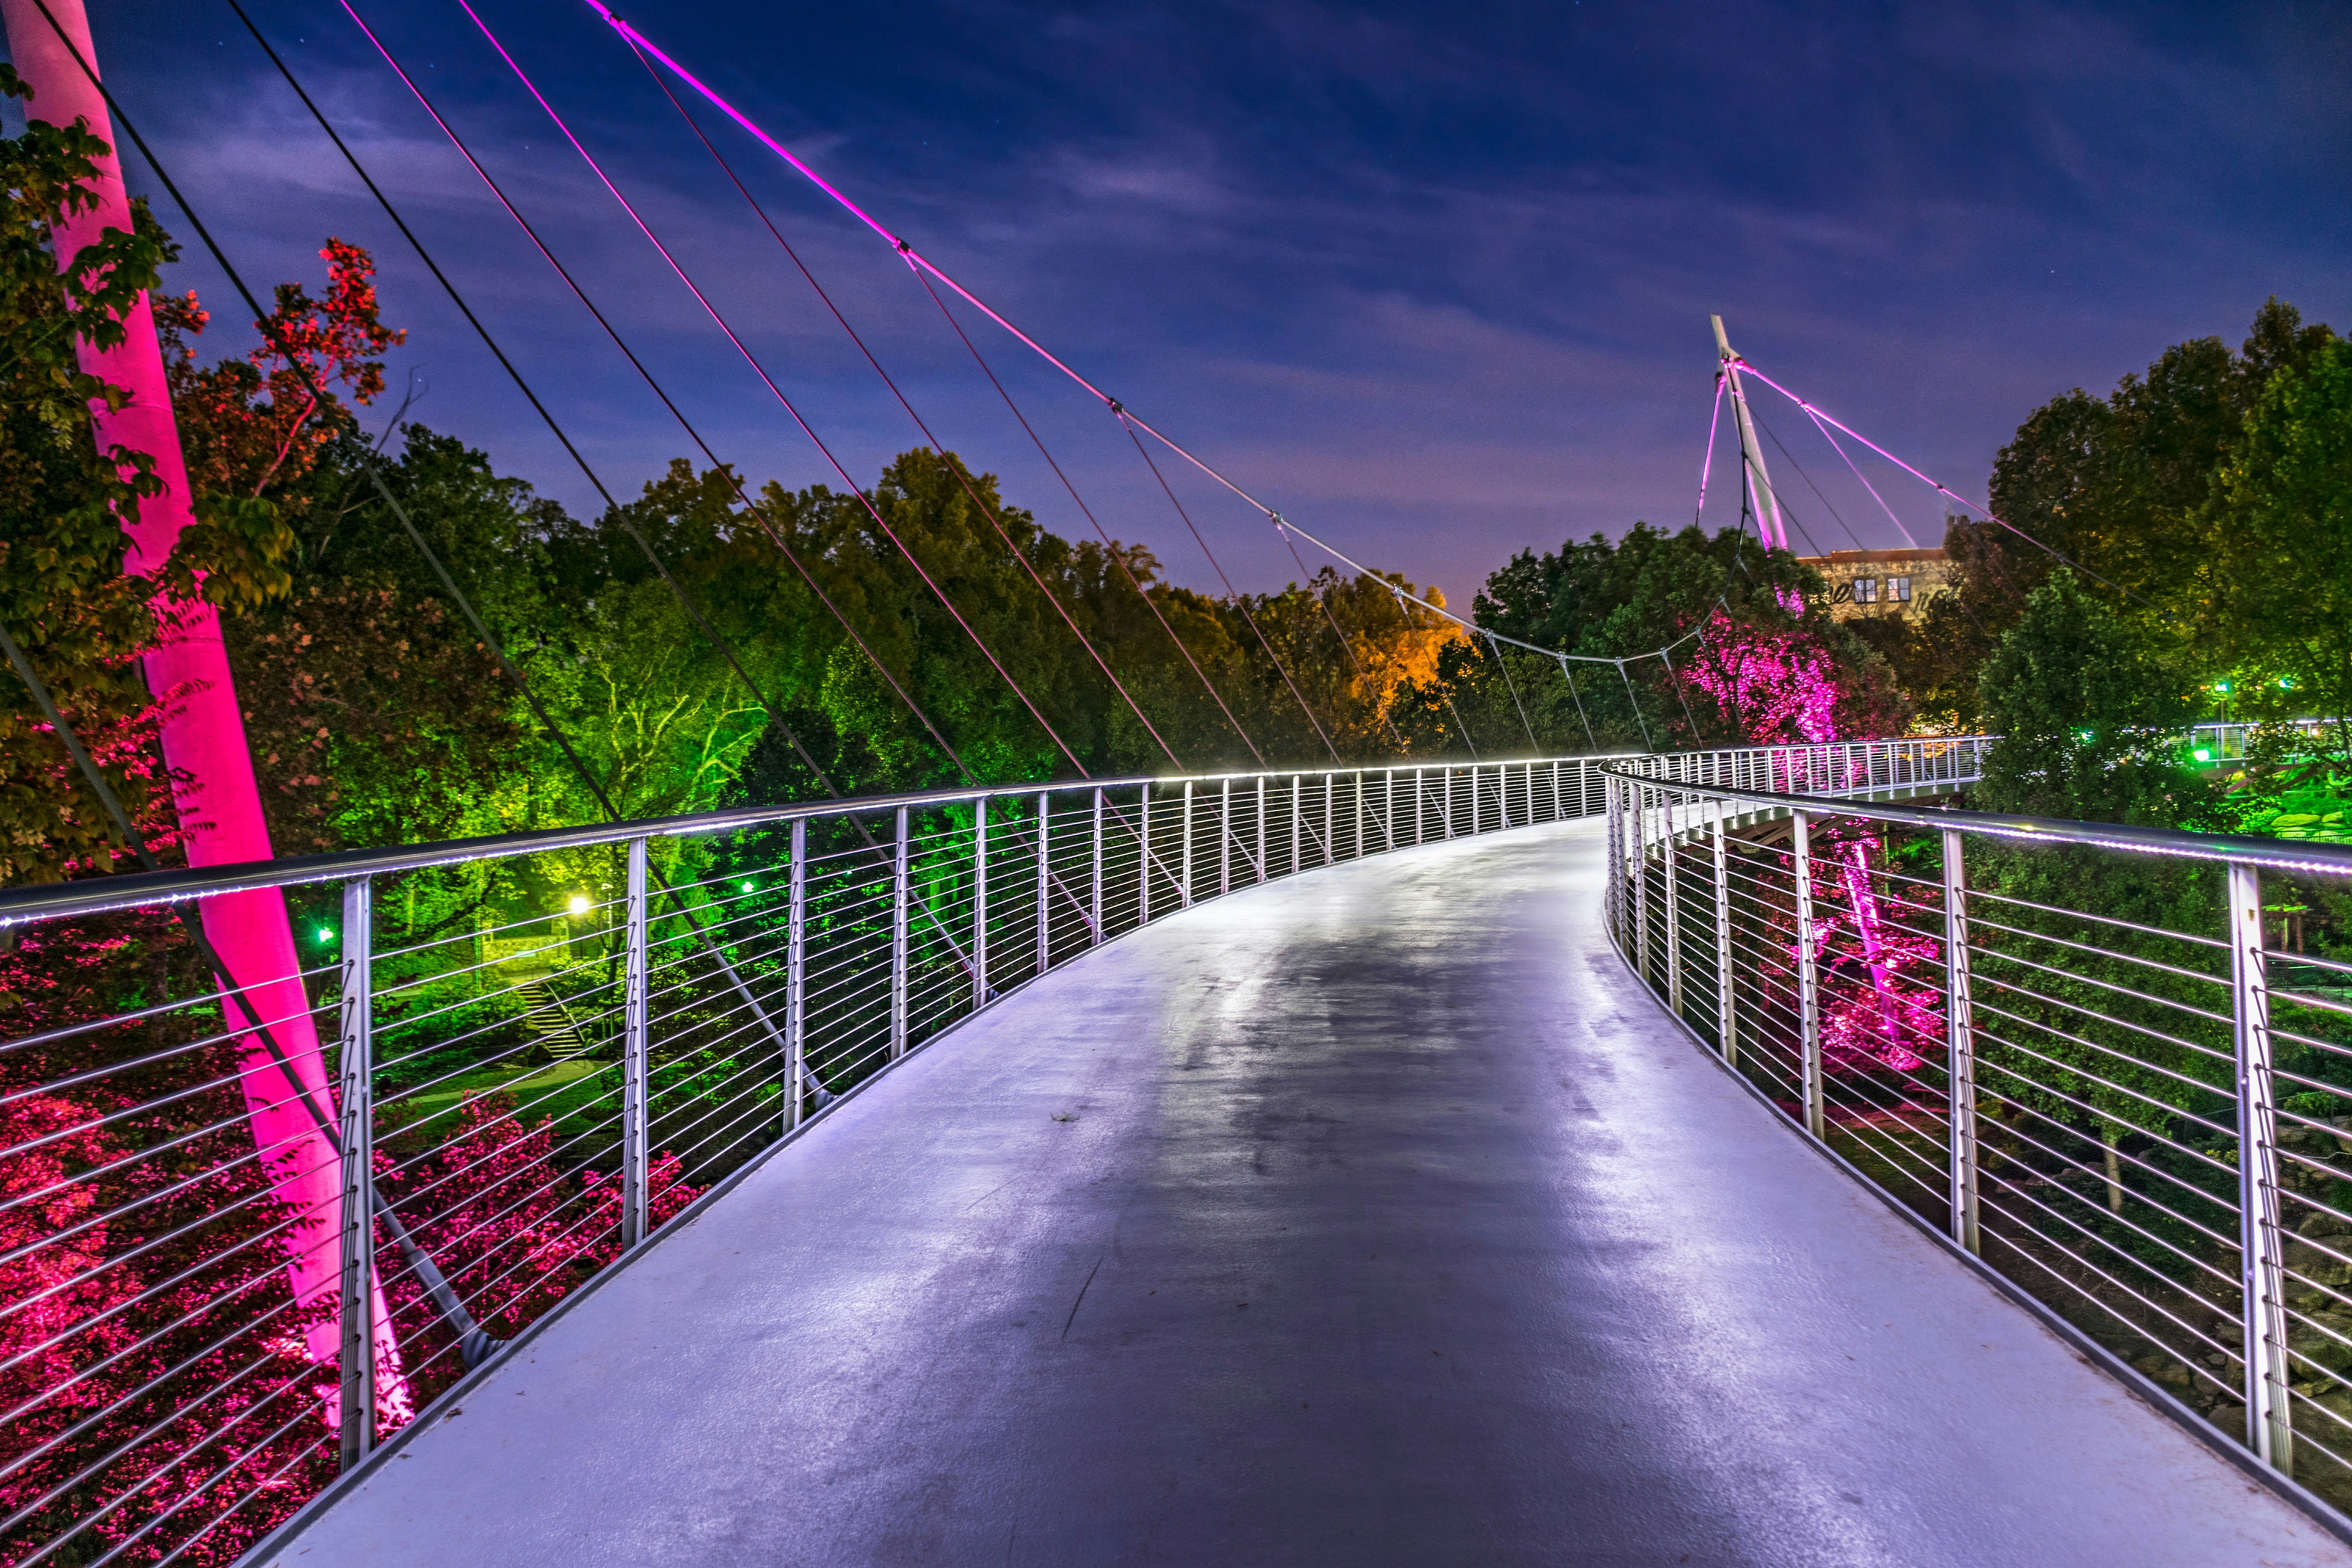 An illuminated footbridge at night